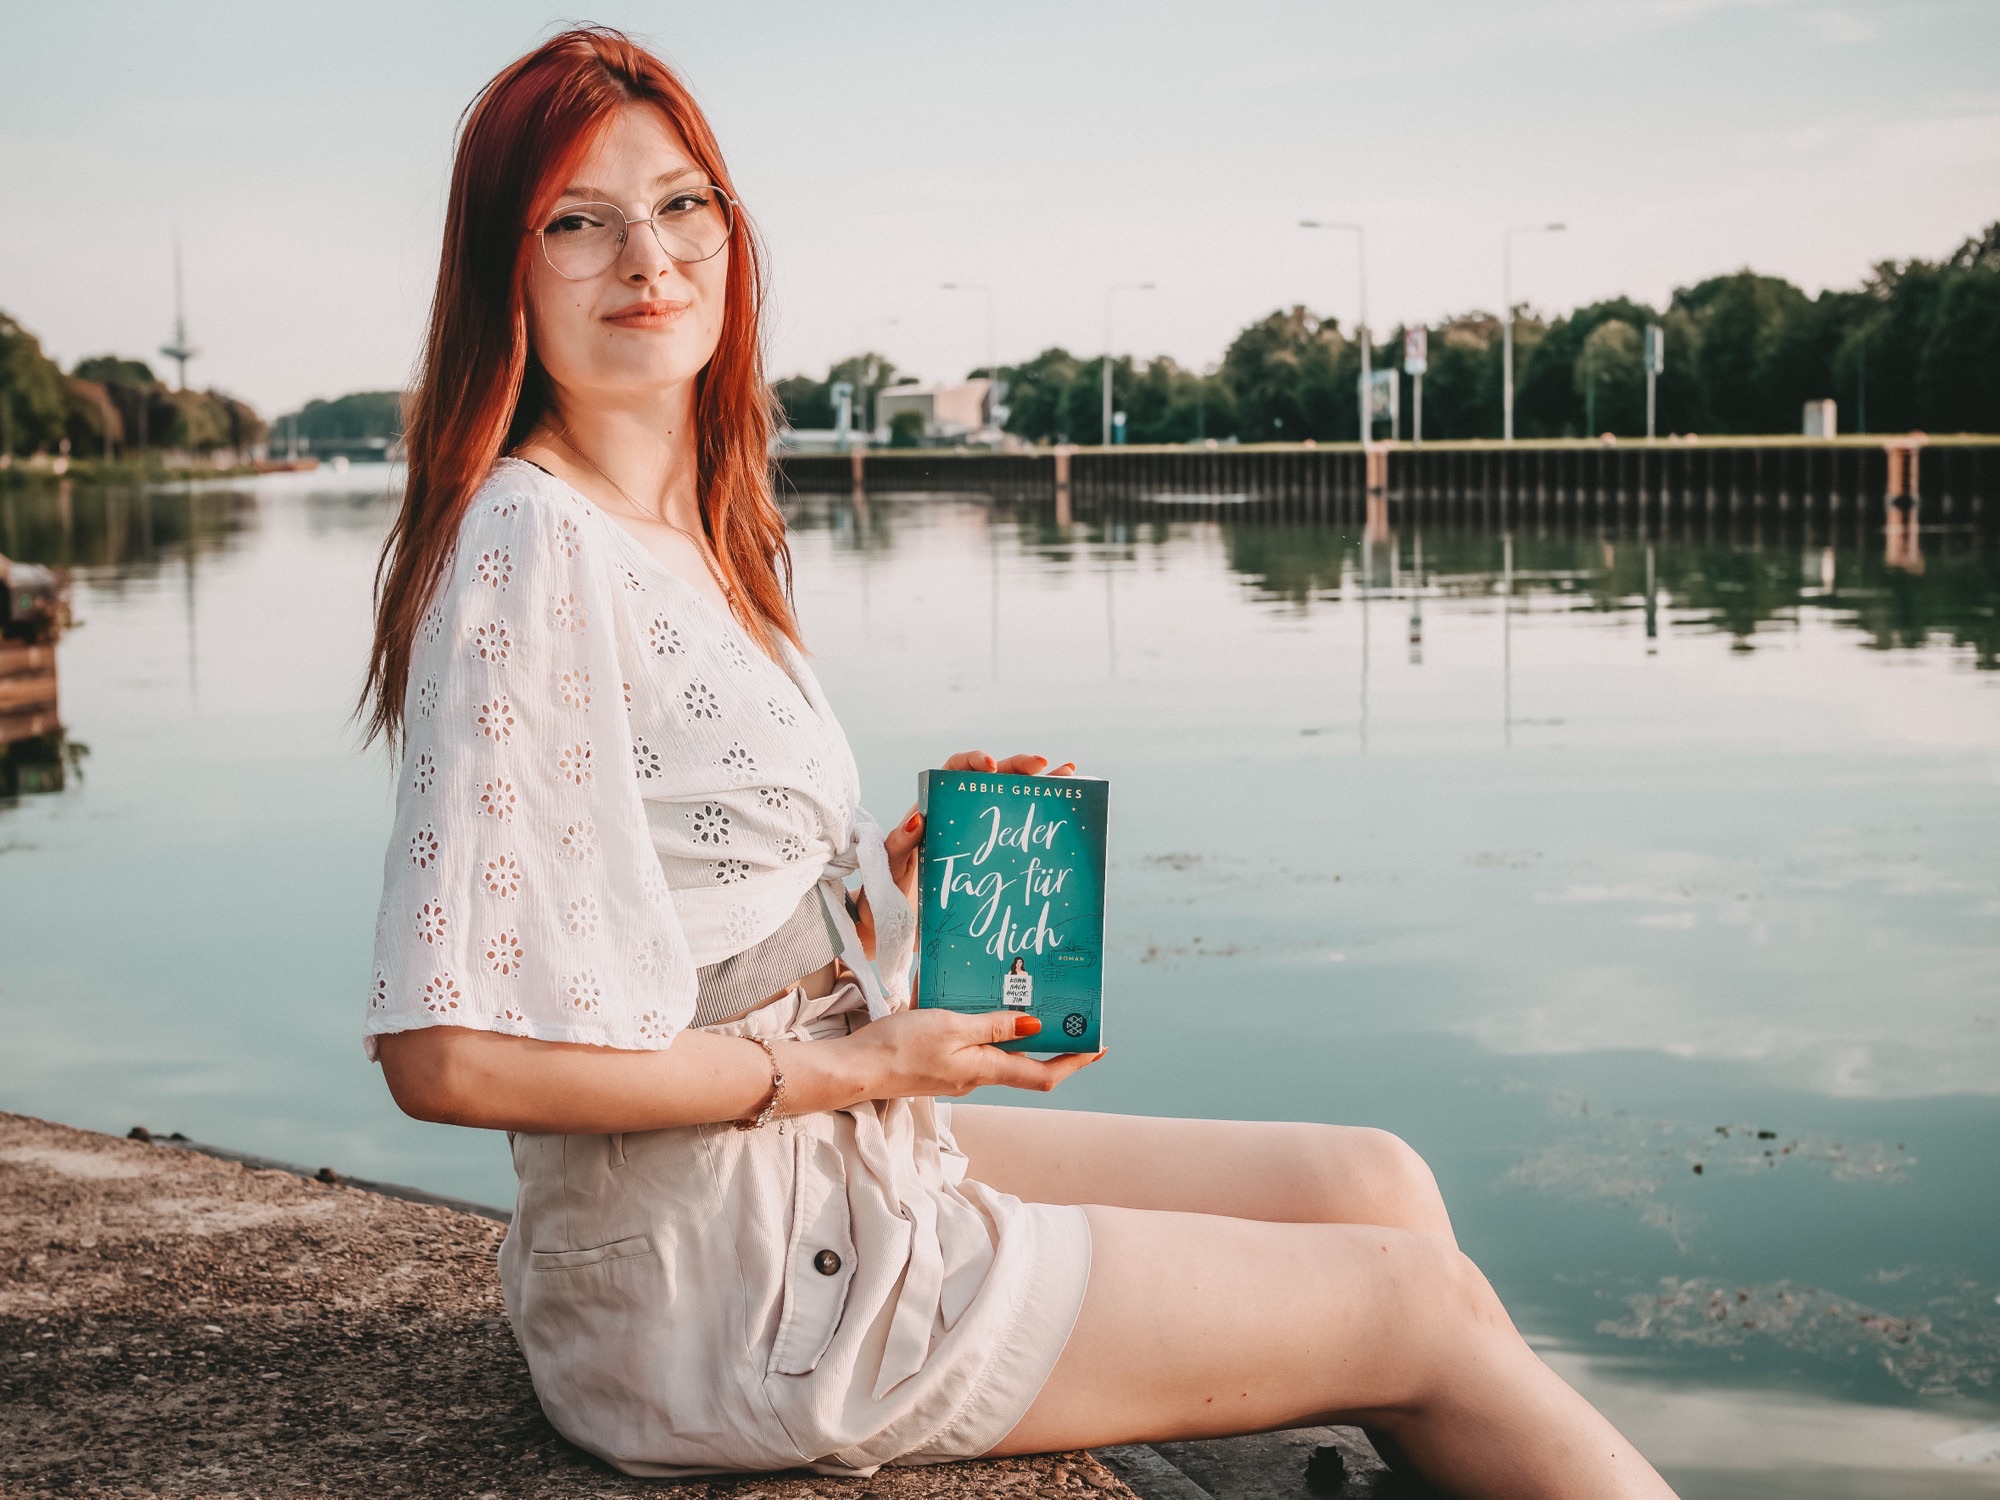 Jeder Tag für dich von Abbie Greaves Fischer Verlag rohaariges Mädchen mit Buch in der Hand am Wasser